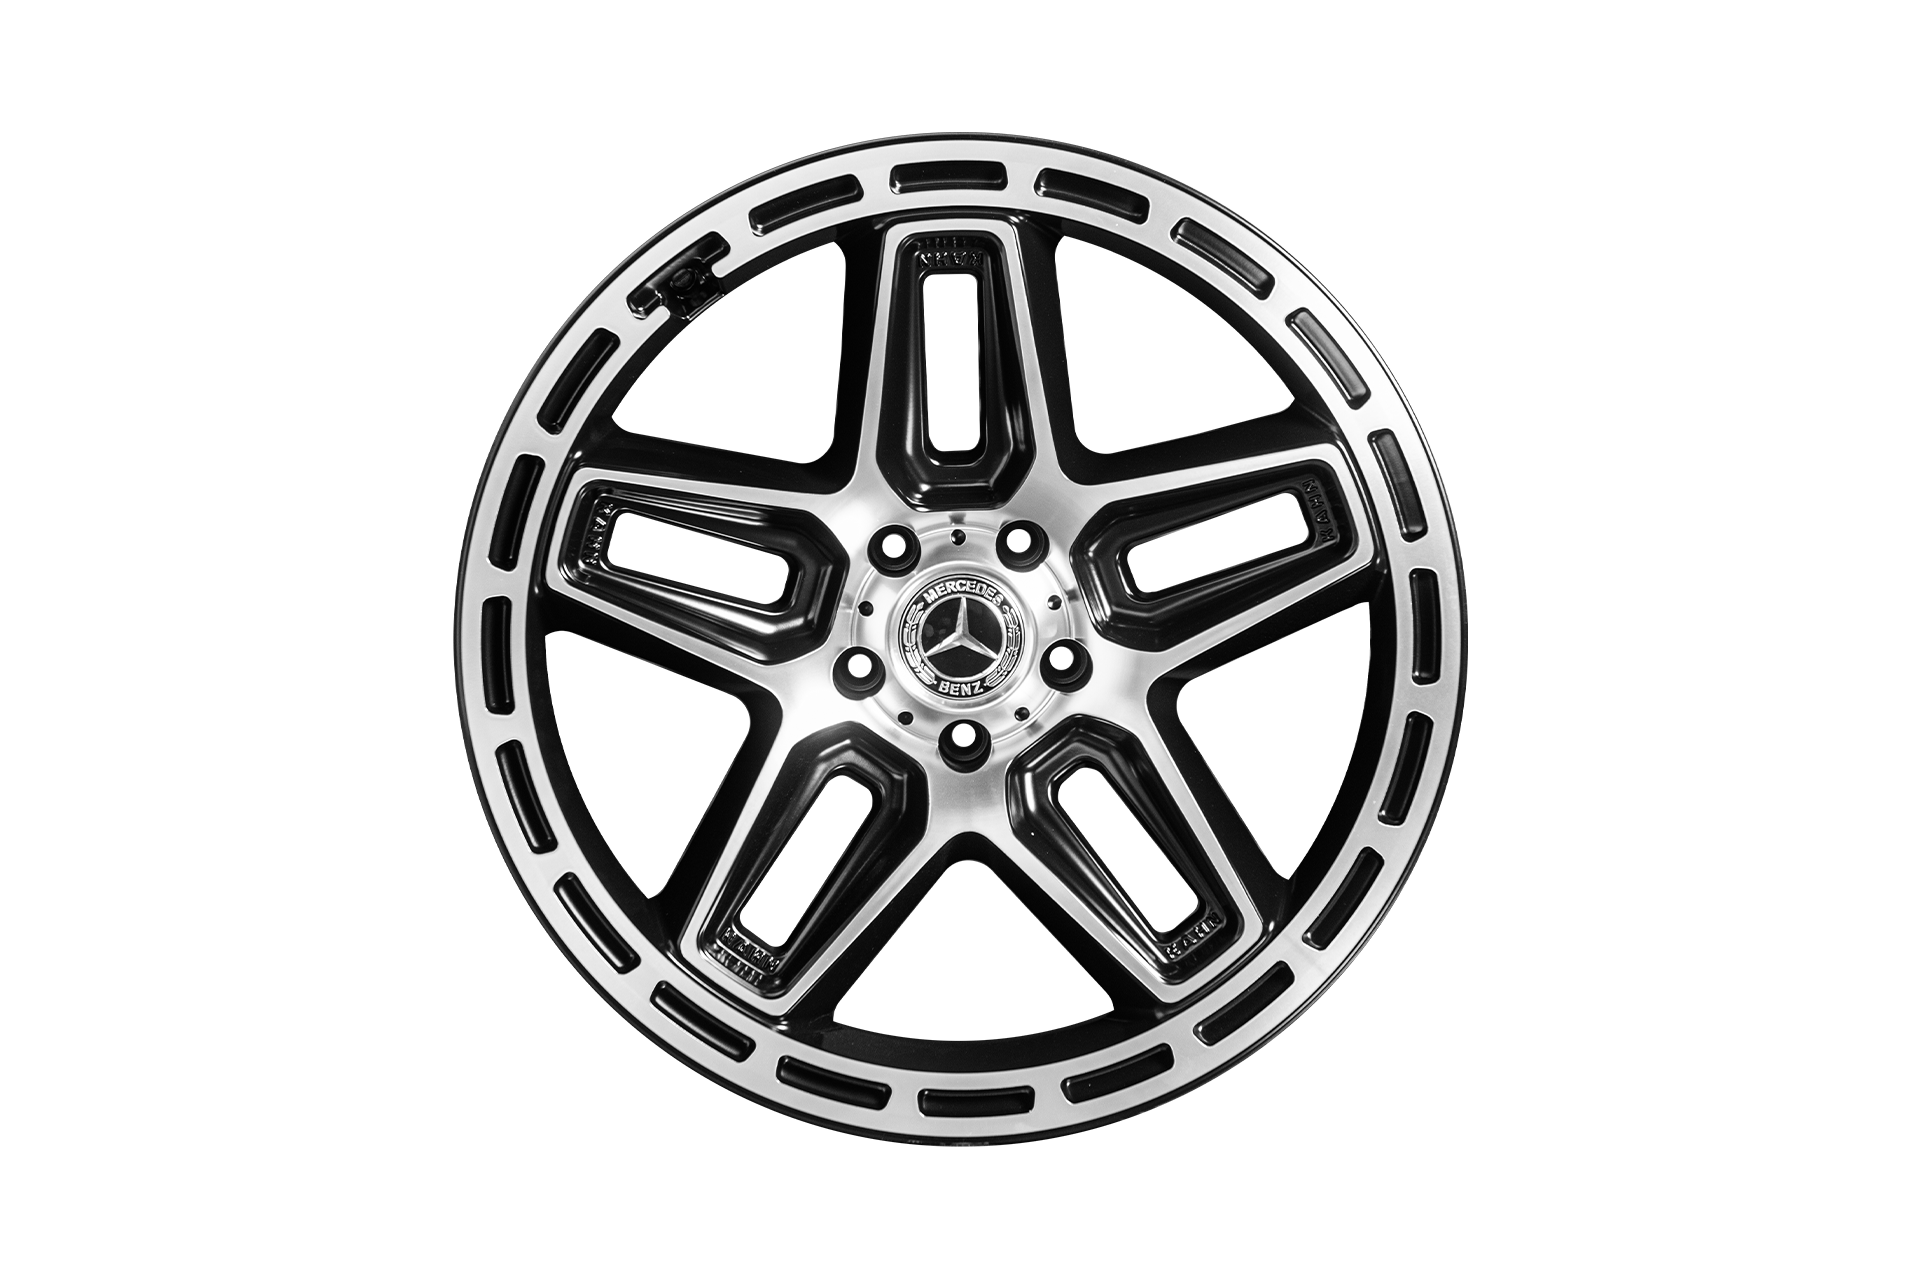 Mercedes G Wagon AMG Wheels, 22 Inch Diamond Cut